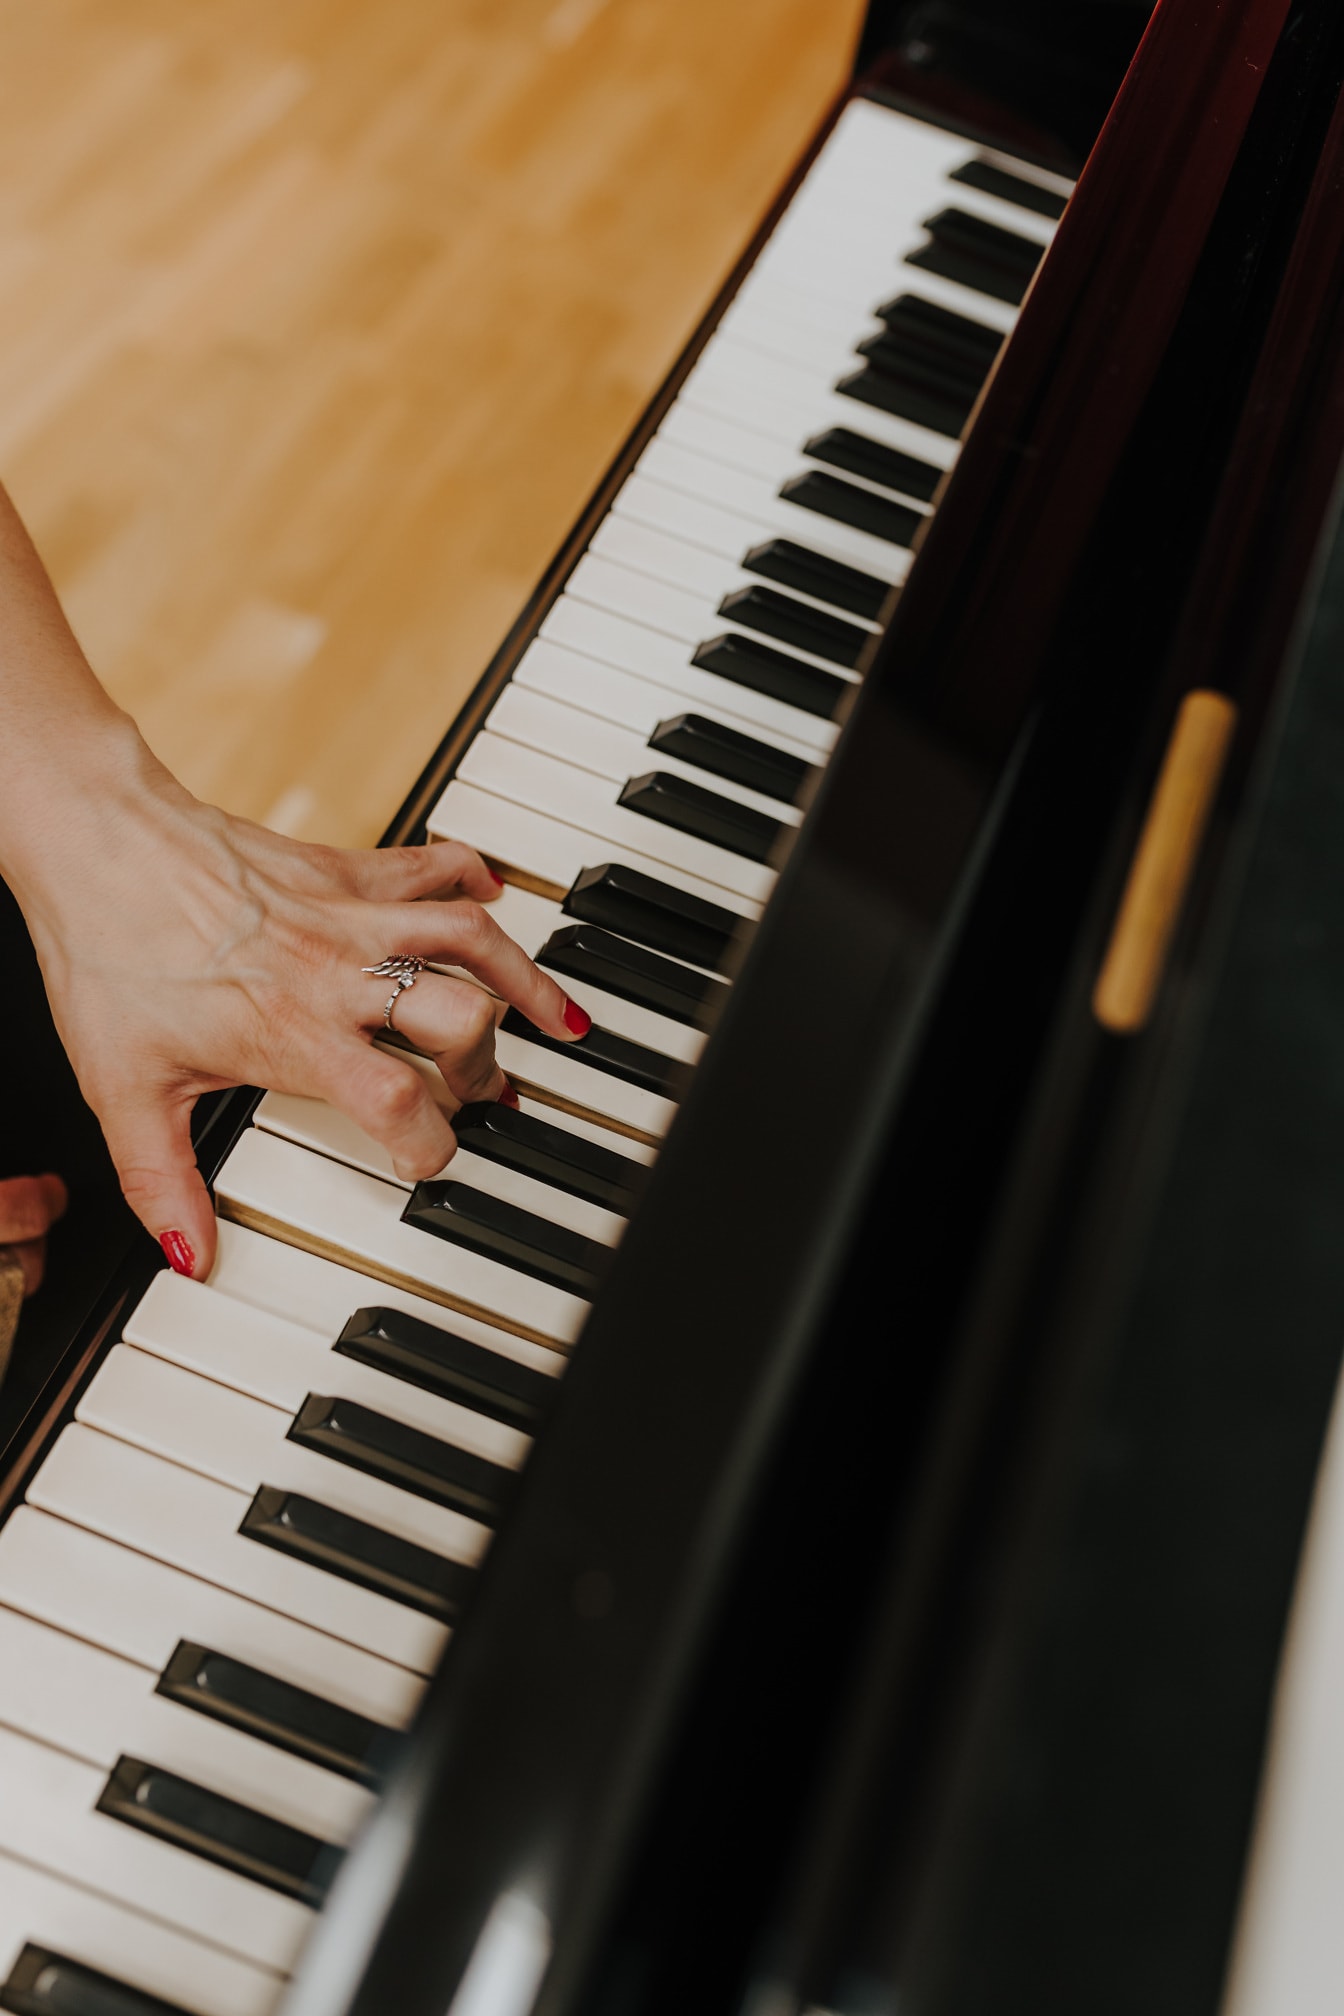 Ruka s prstenem a červeným lakem na nehty hraje na klavír zblízka